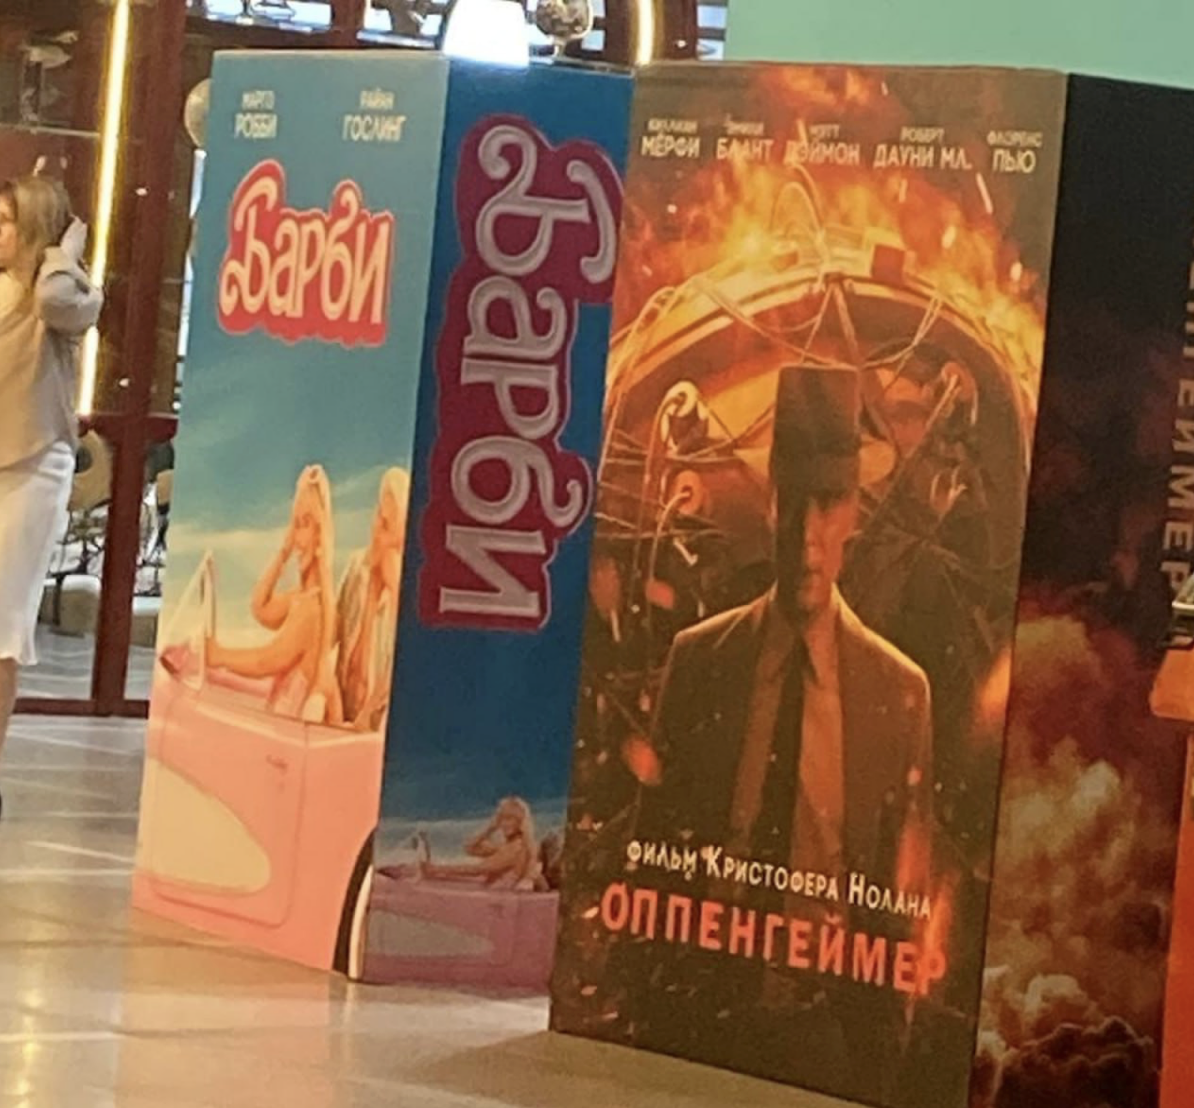 В России нашли позорный способ, как показать "Барби" и "Оппенгеймера" в кинотеатрах, и раскрыли поставщика "санкционки"